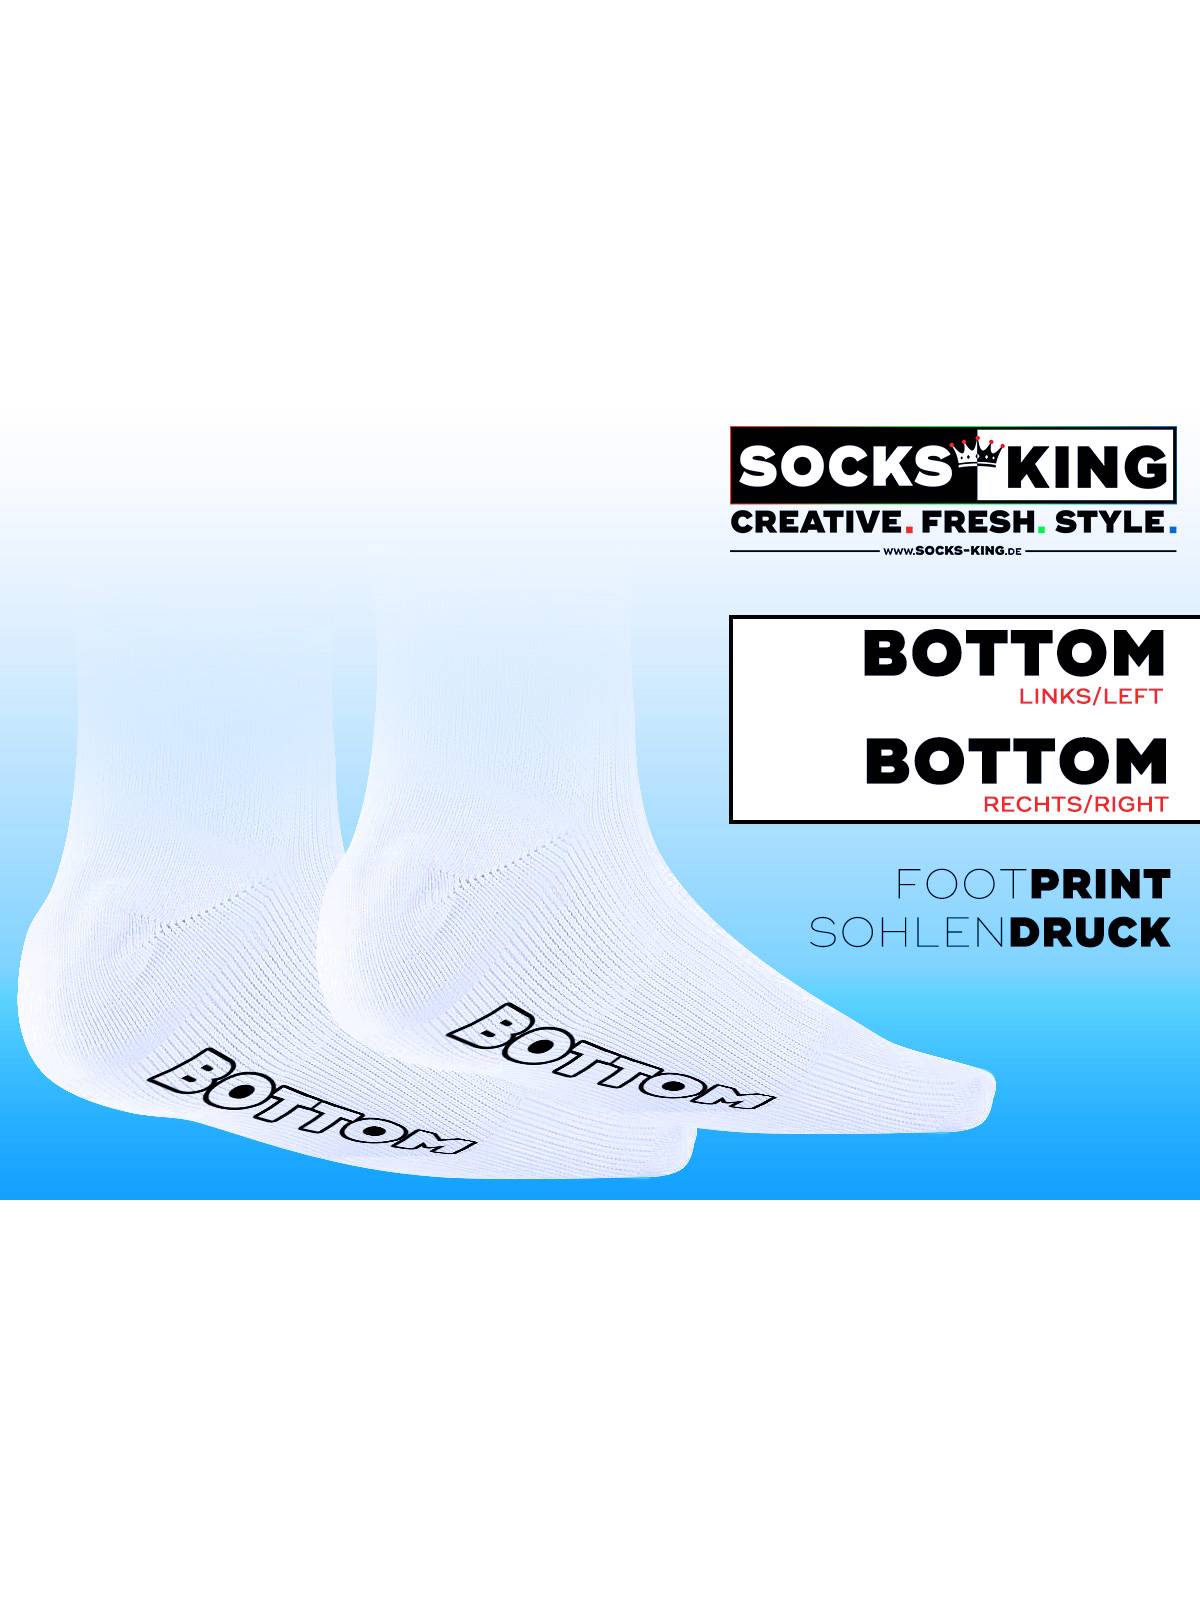 SneakFreaxx SNEAK BOTTOM Neon Socks